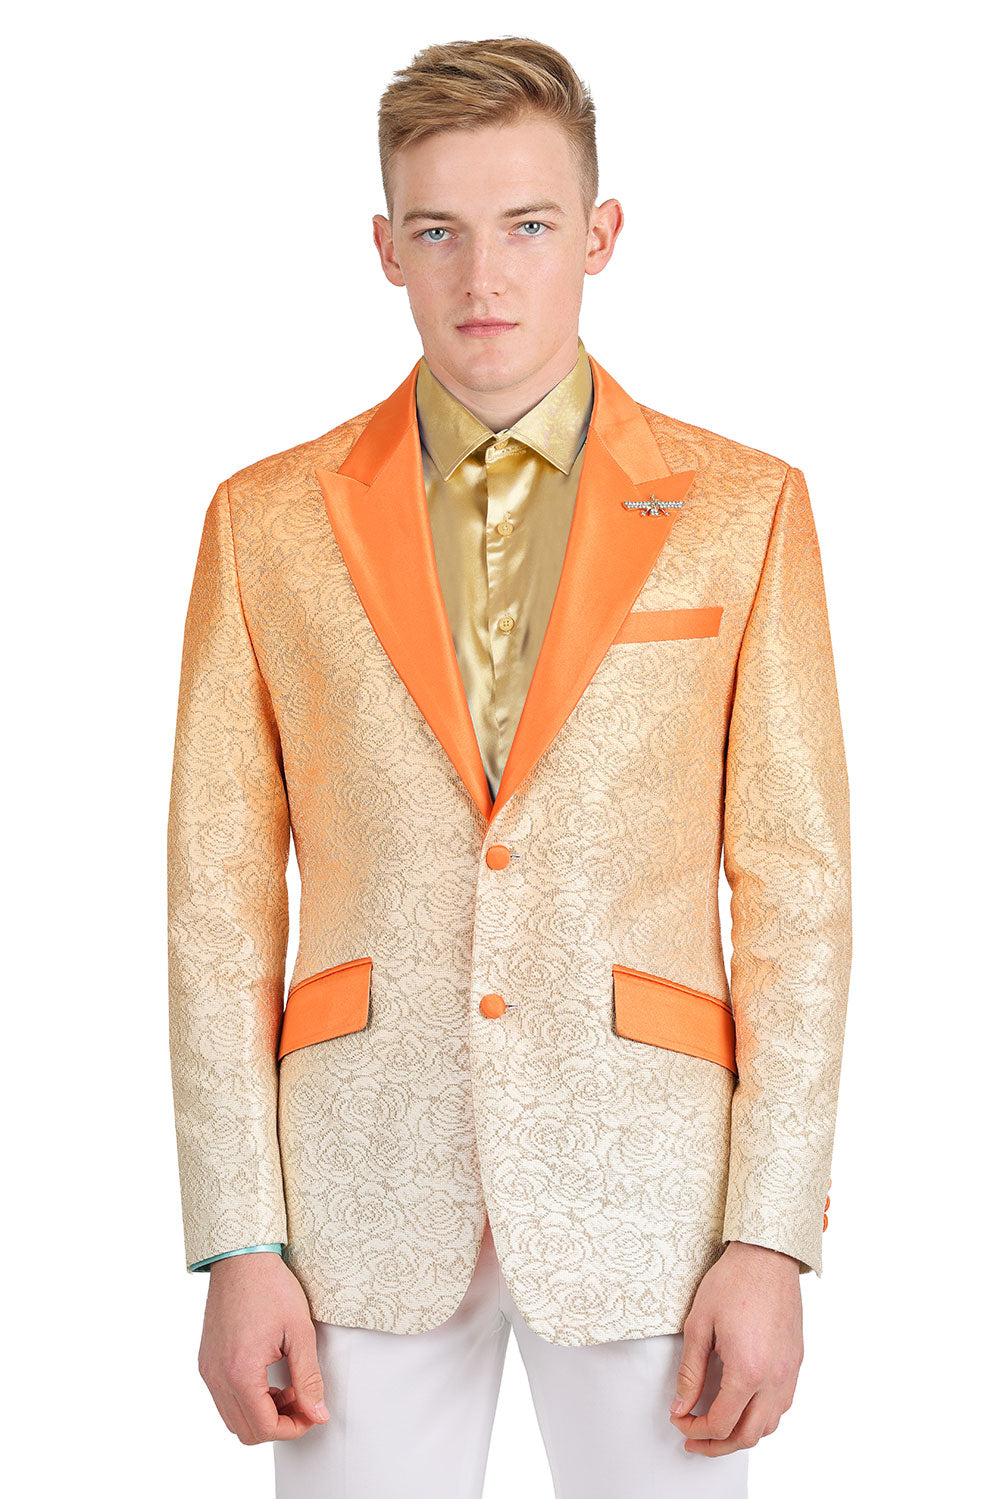 BARABAS Men's Two-Tone Floral Pattern Design Notched Blazer 3BL02 Orange